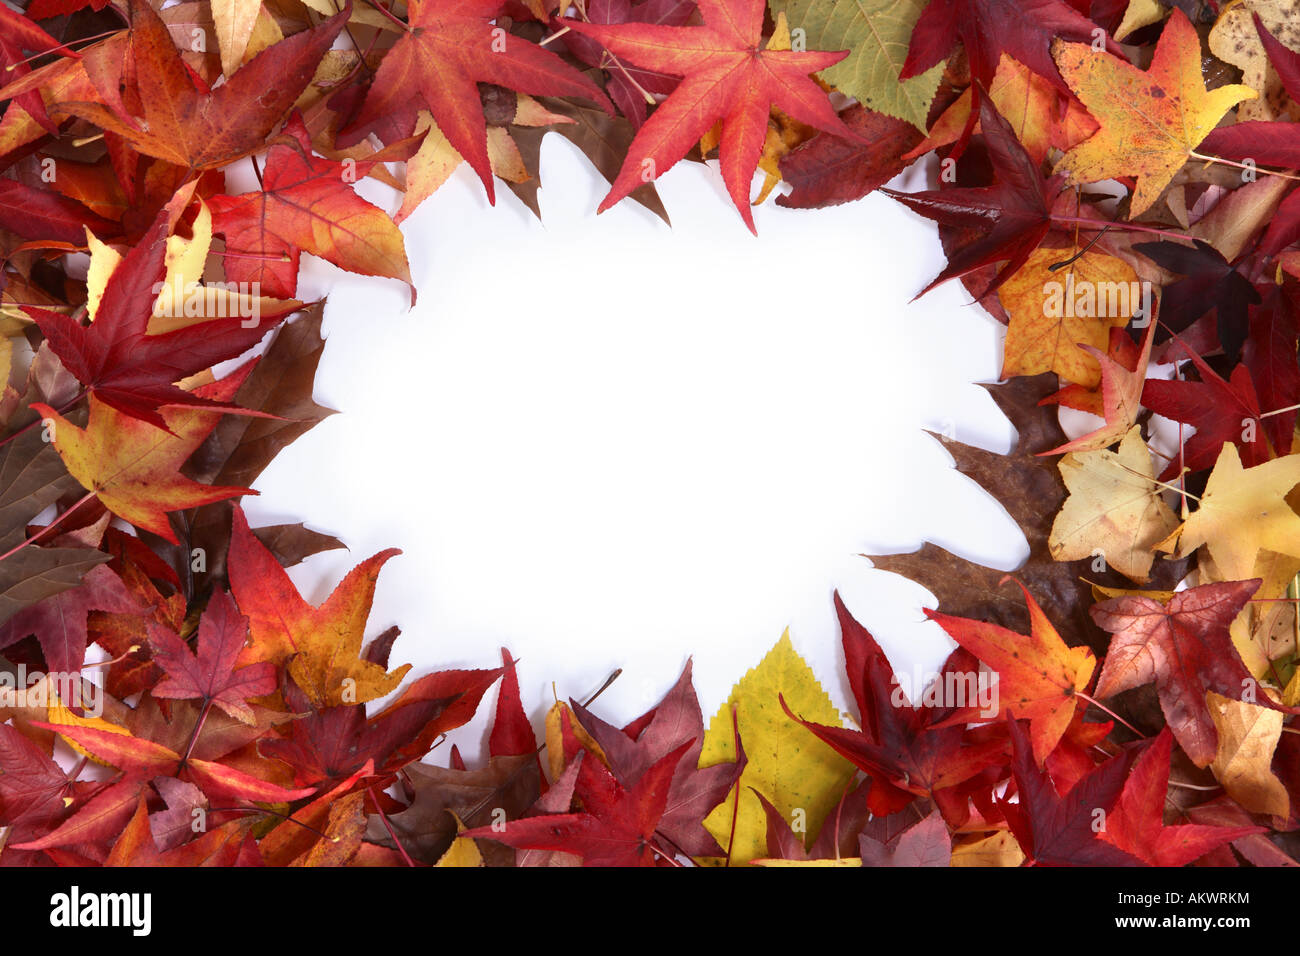 Fall leaf border Stock Photo